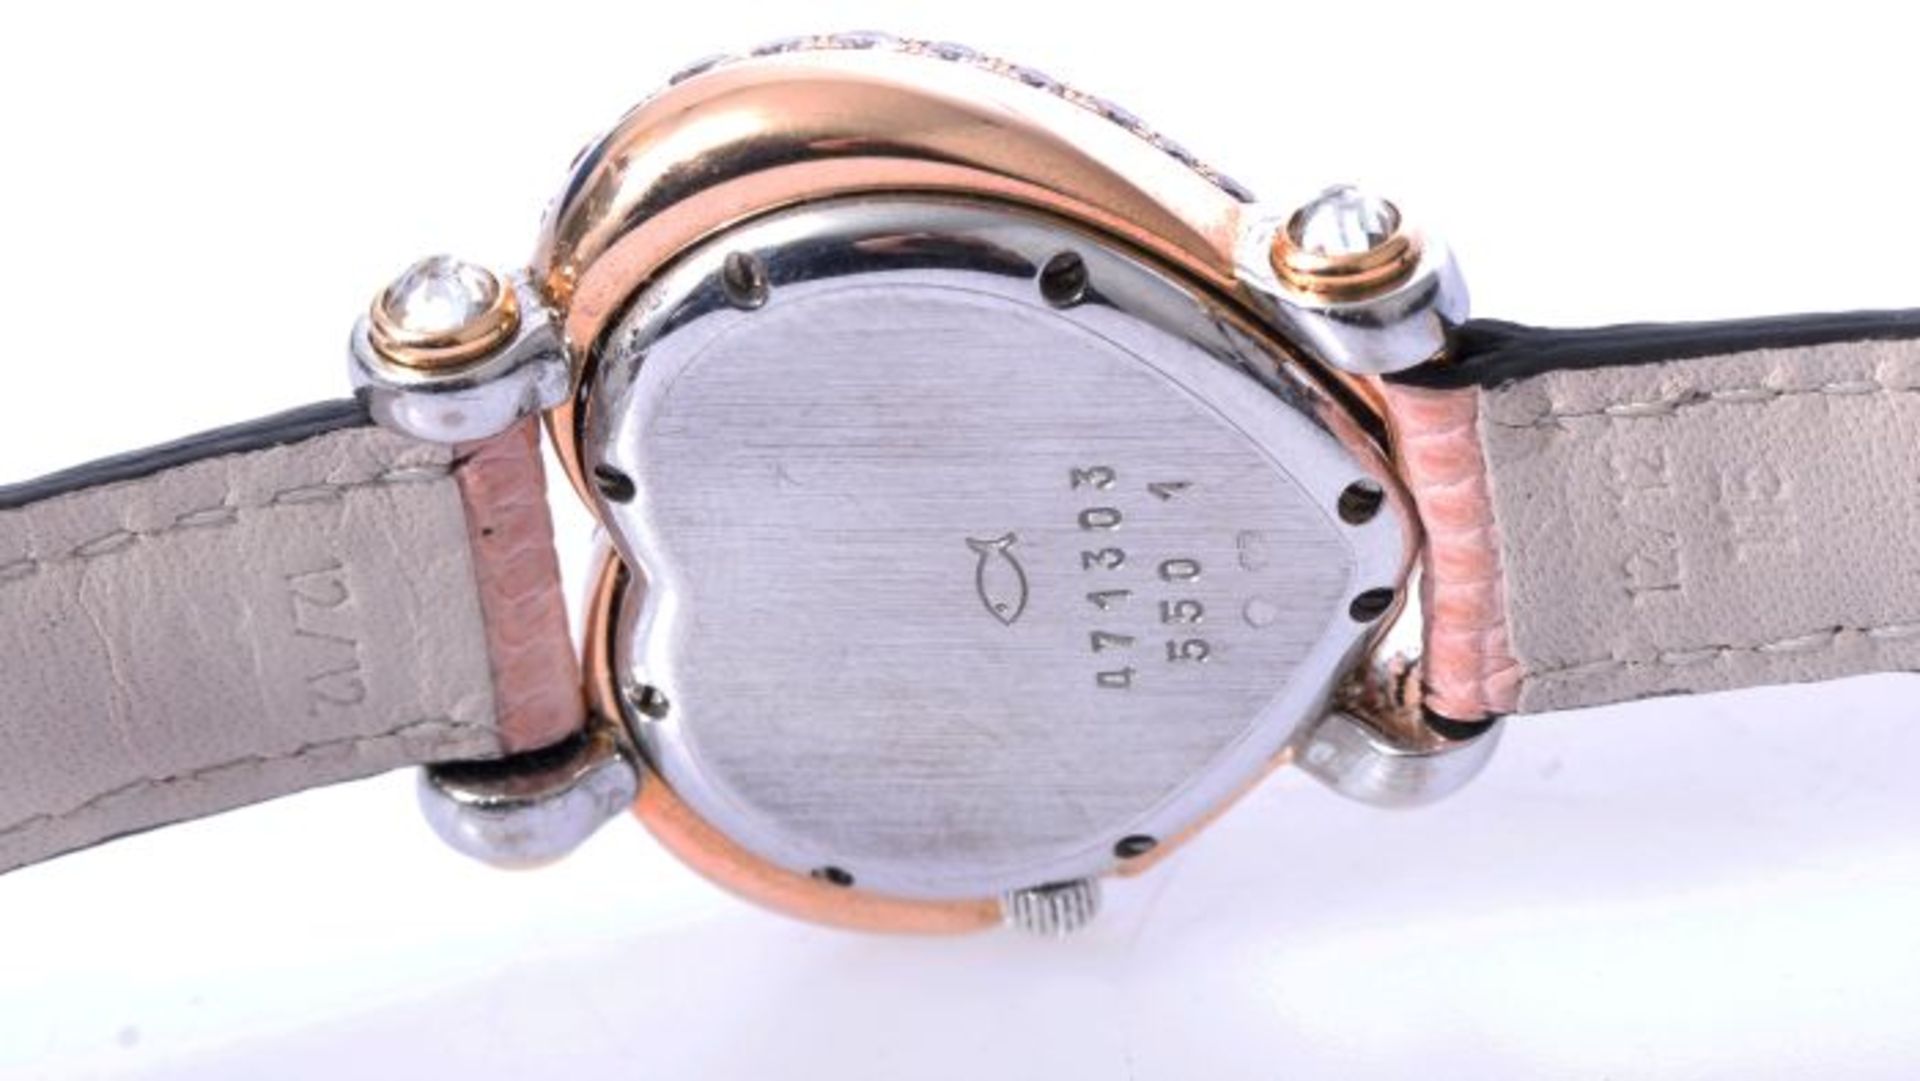 Chopard Happy Diamonds Uhr mit 2,43ct. pinken Brillanten NP 102.780 Euro750 Weiß- und Roségold. - Bild 3 aus 7